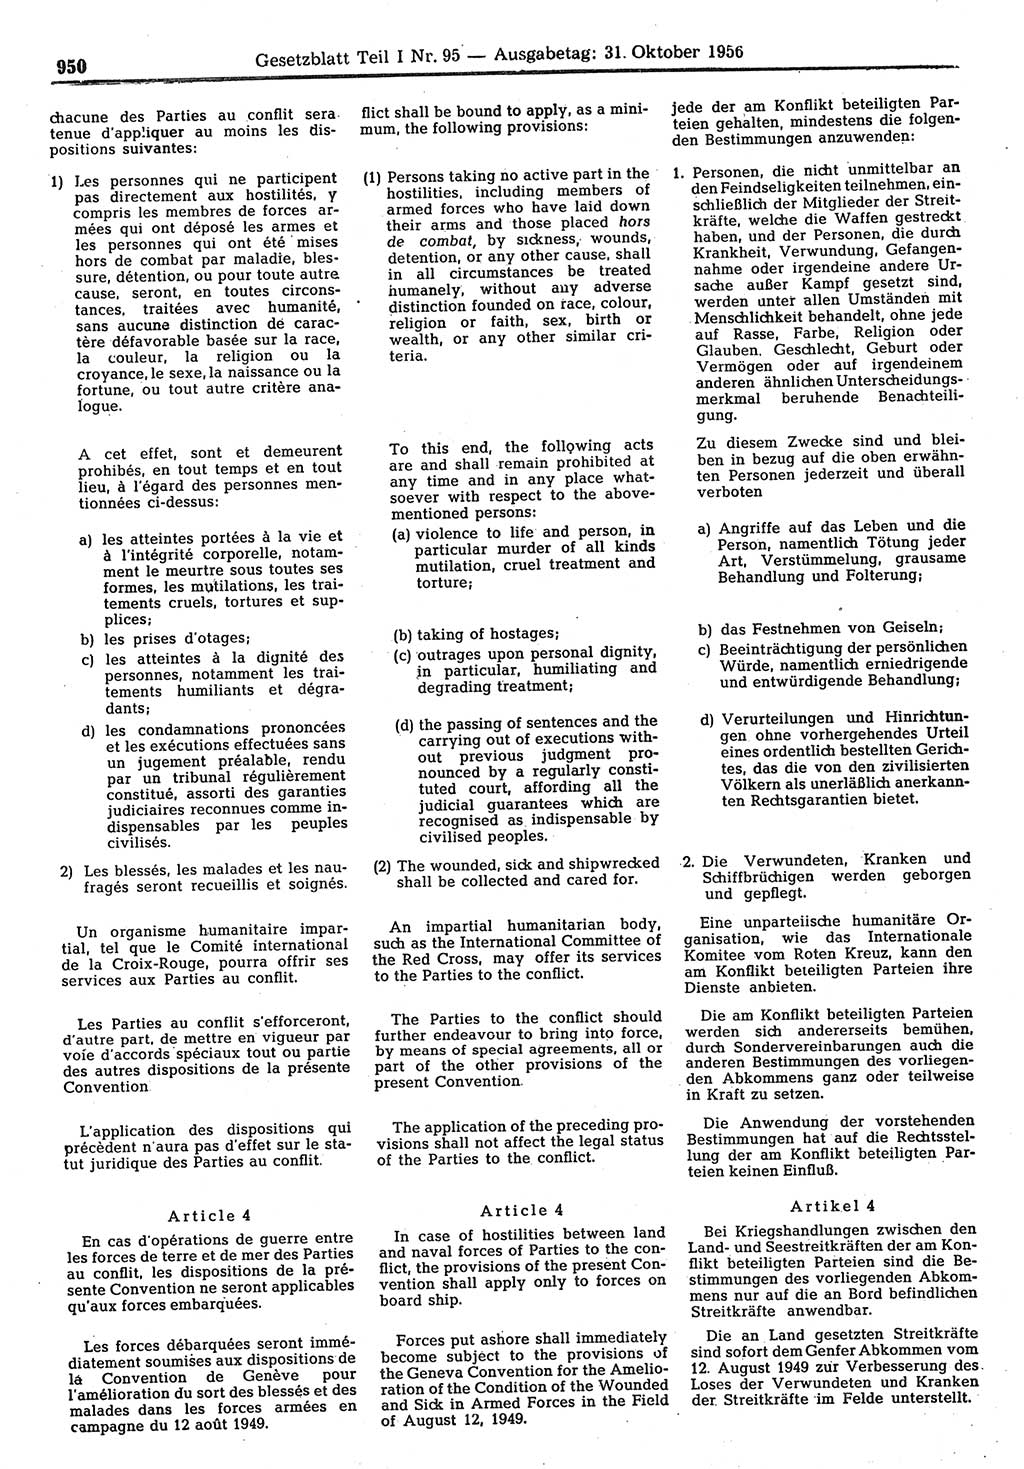 Gesetzblatt (GBl.) der Deutschen Demokratischen Republik (DDR) Teil Ⅰ 1956, Seite 950 (GBl. DDR Ⅰ 1956, S. 950)